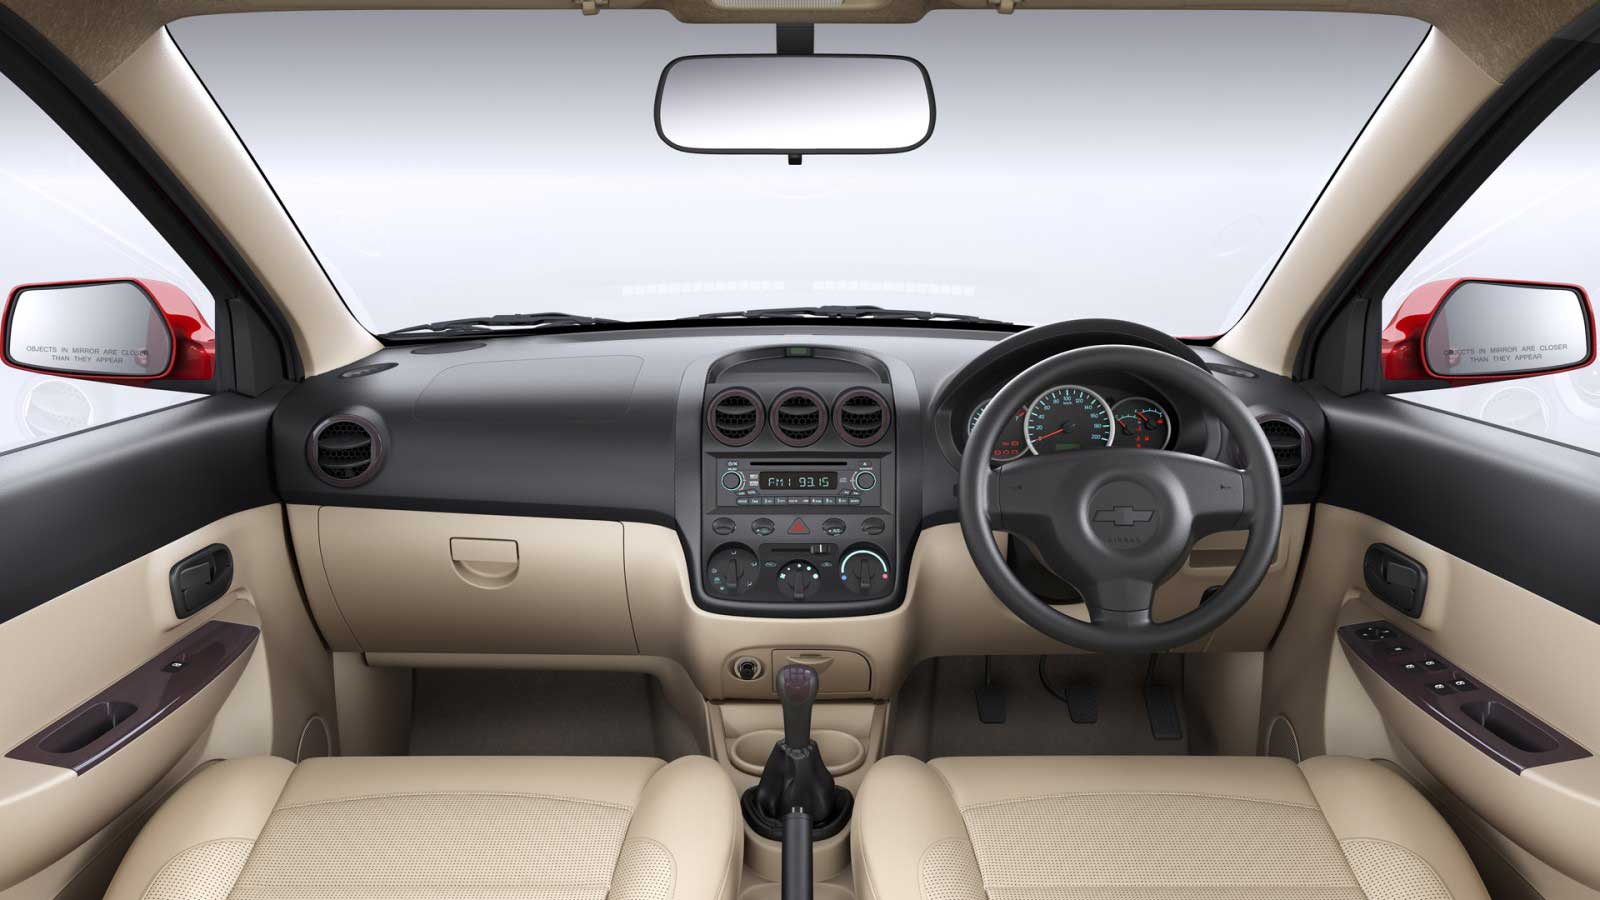 Chevrolet Enjoy 1.4 LTZ 7 STR Interior front view